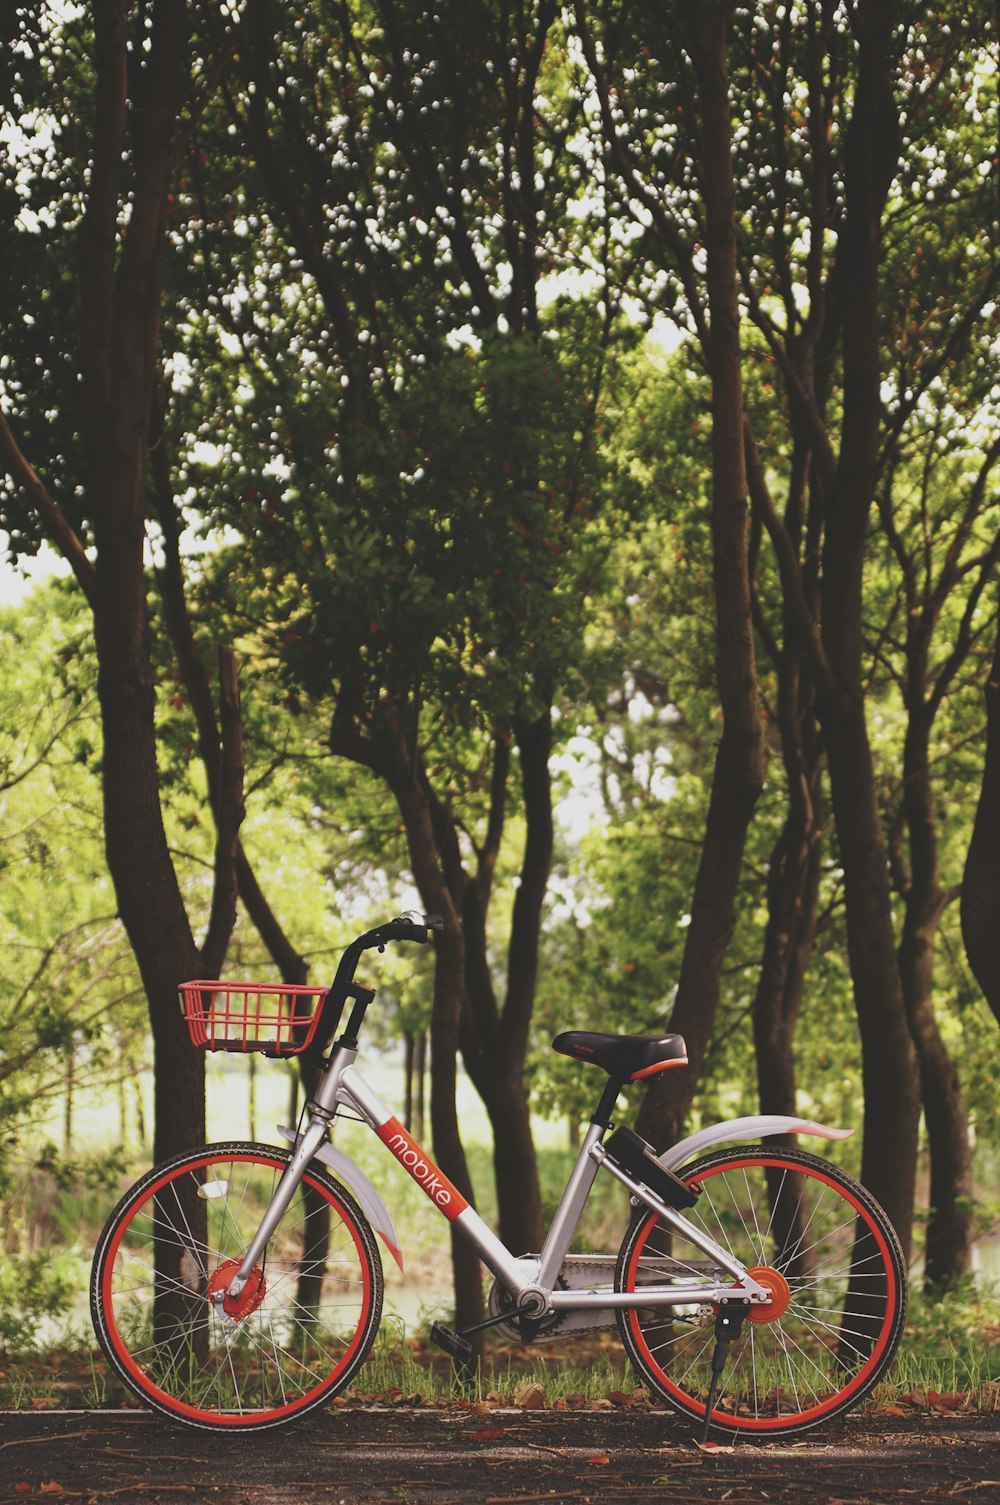 나무 근처에 주차된 자전거 사진